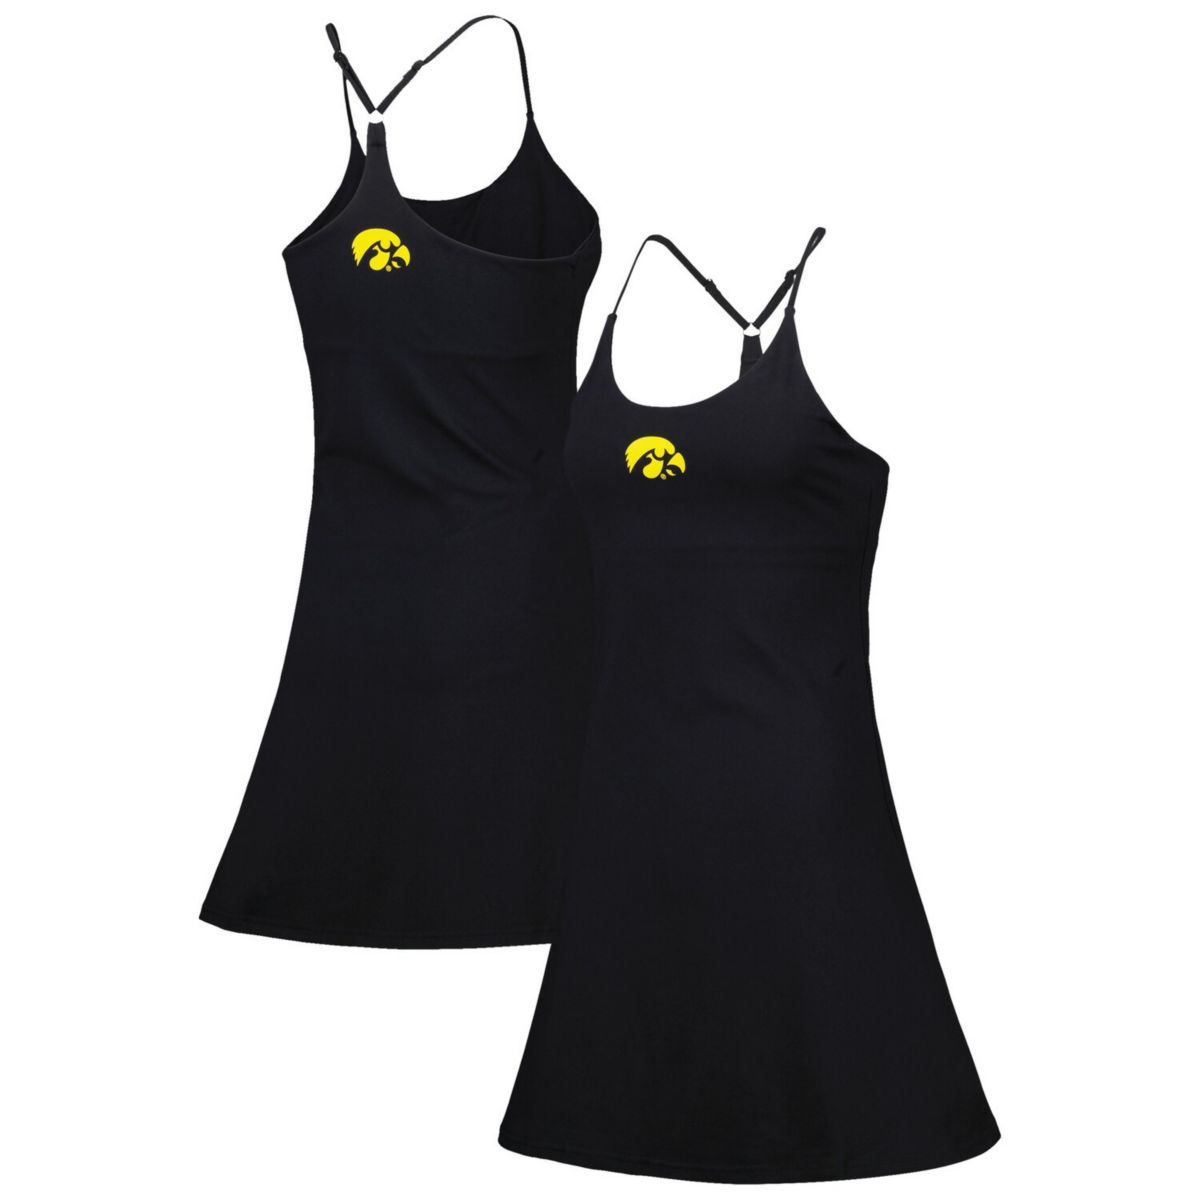 Черное женское платье в стиле кампус с надписью «Iowa Hawkeyes Campus» от Verified & Co. Unbranded